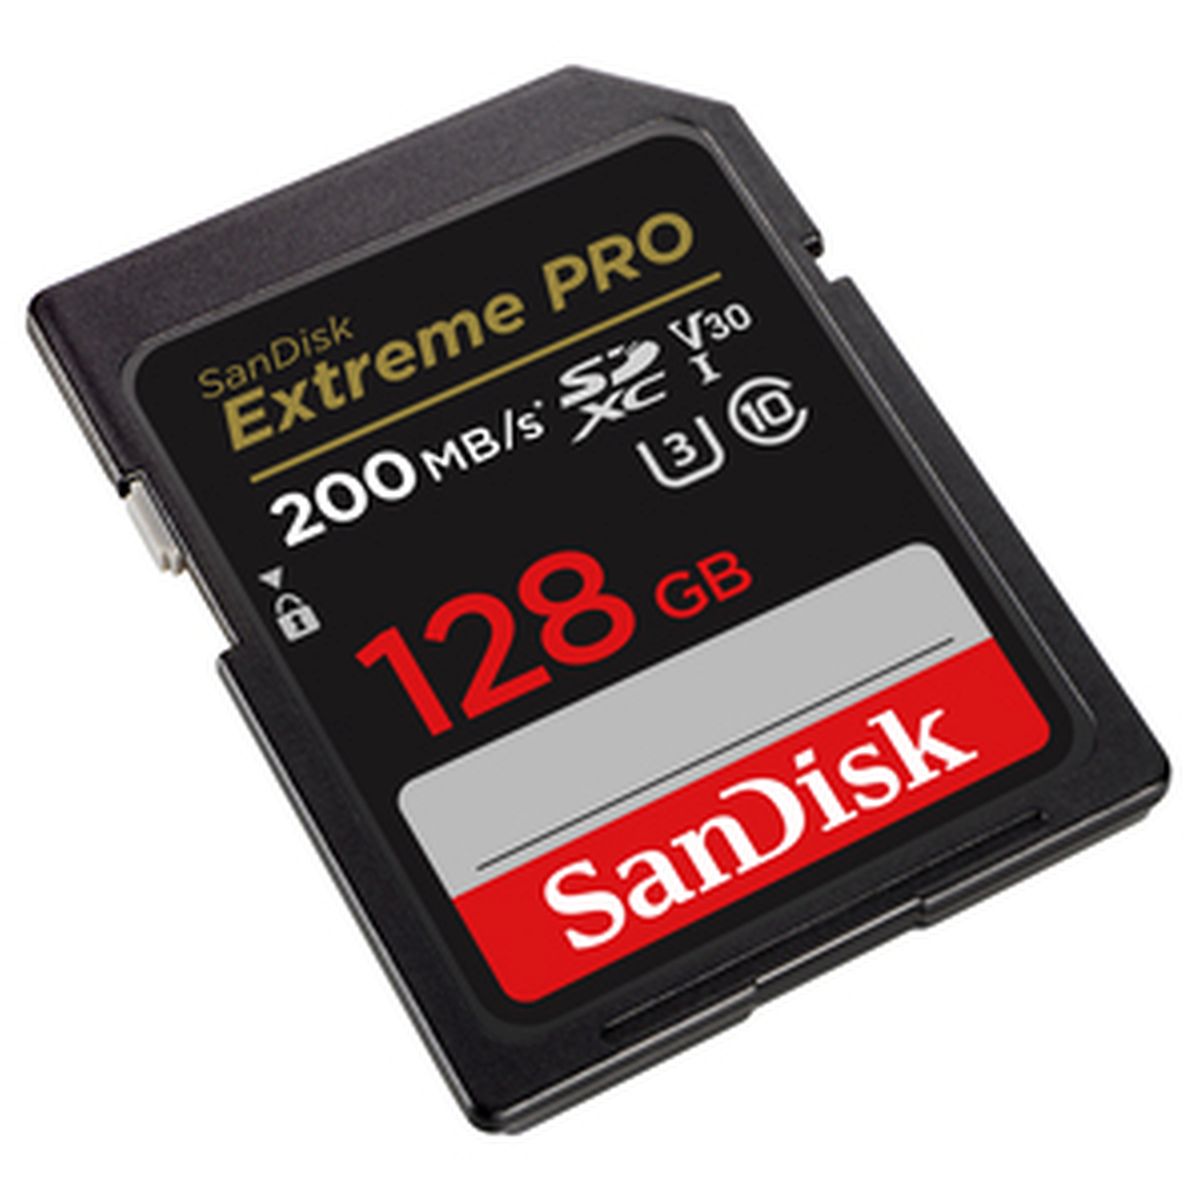 SanDisk 128 GB SDXC ExtremePro 200MB/s 